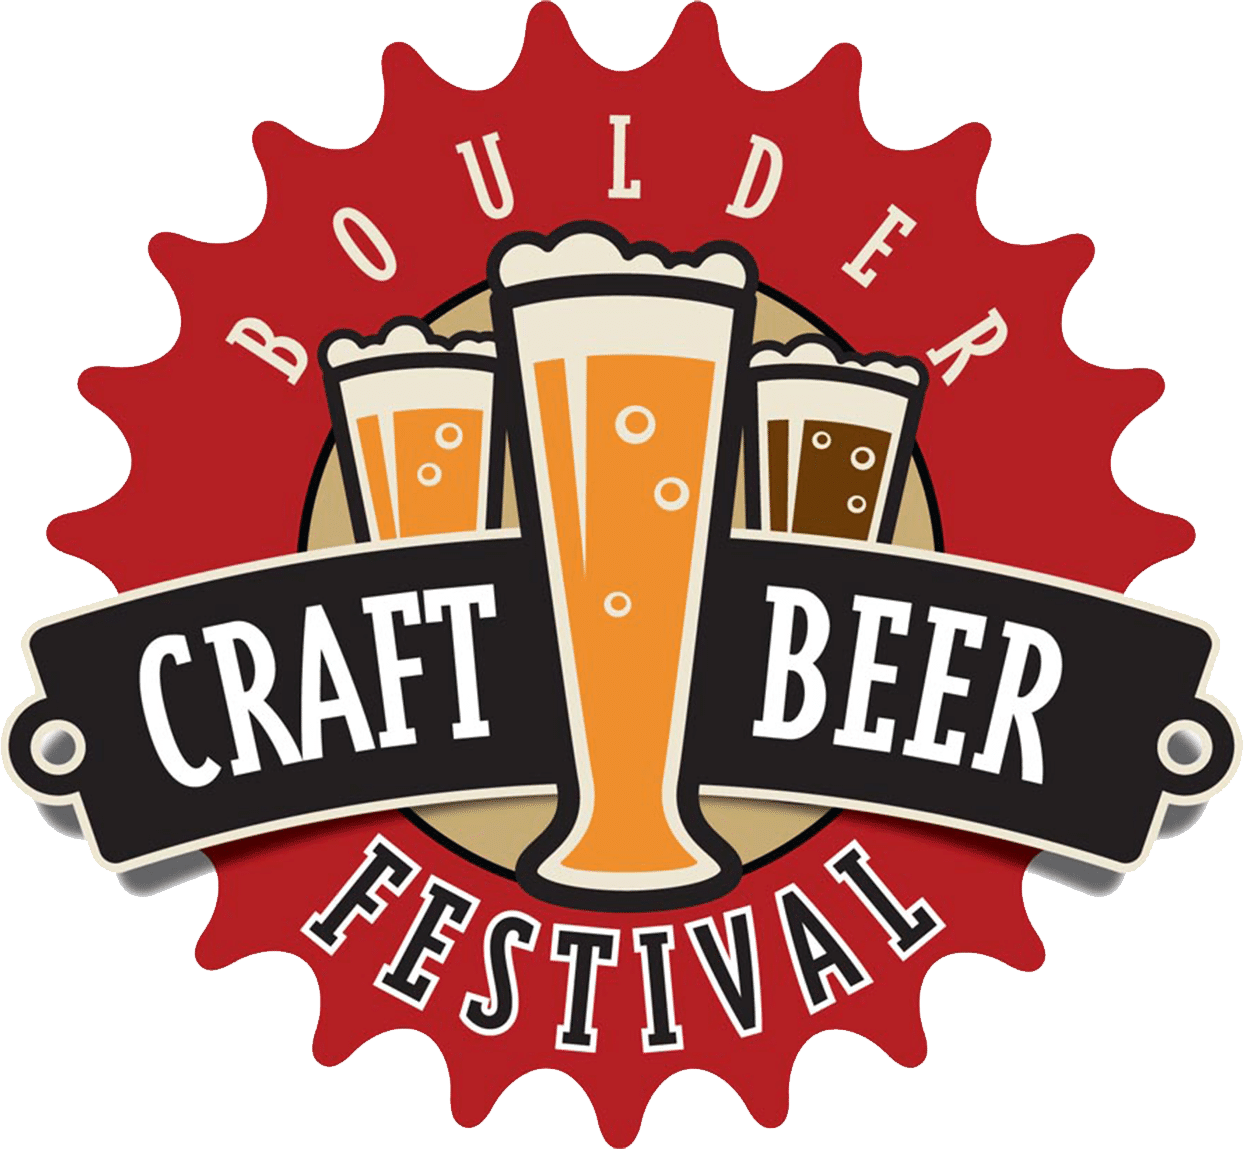 Boulder Craft Beer Festival Events Downtown Boulder, CO